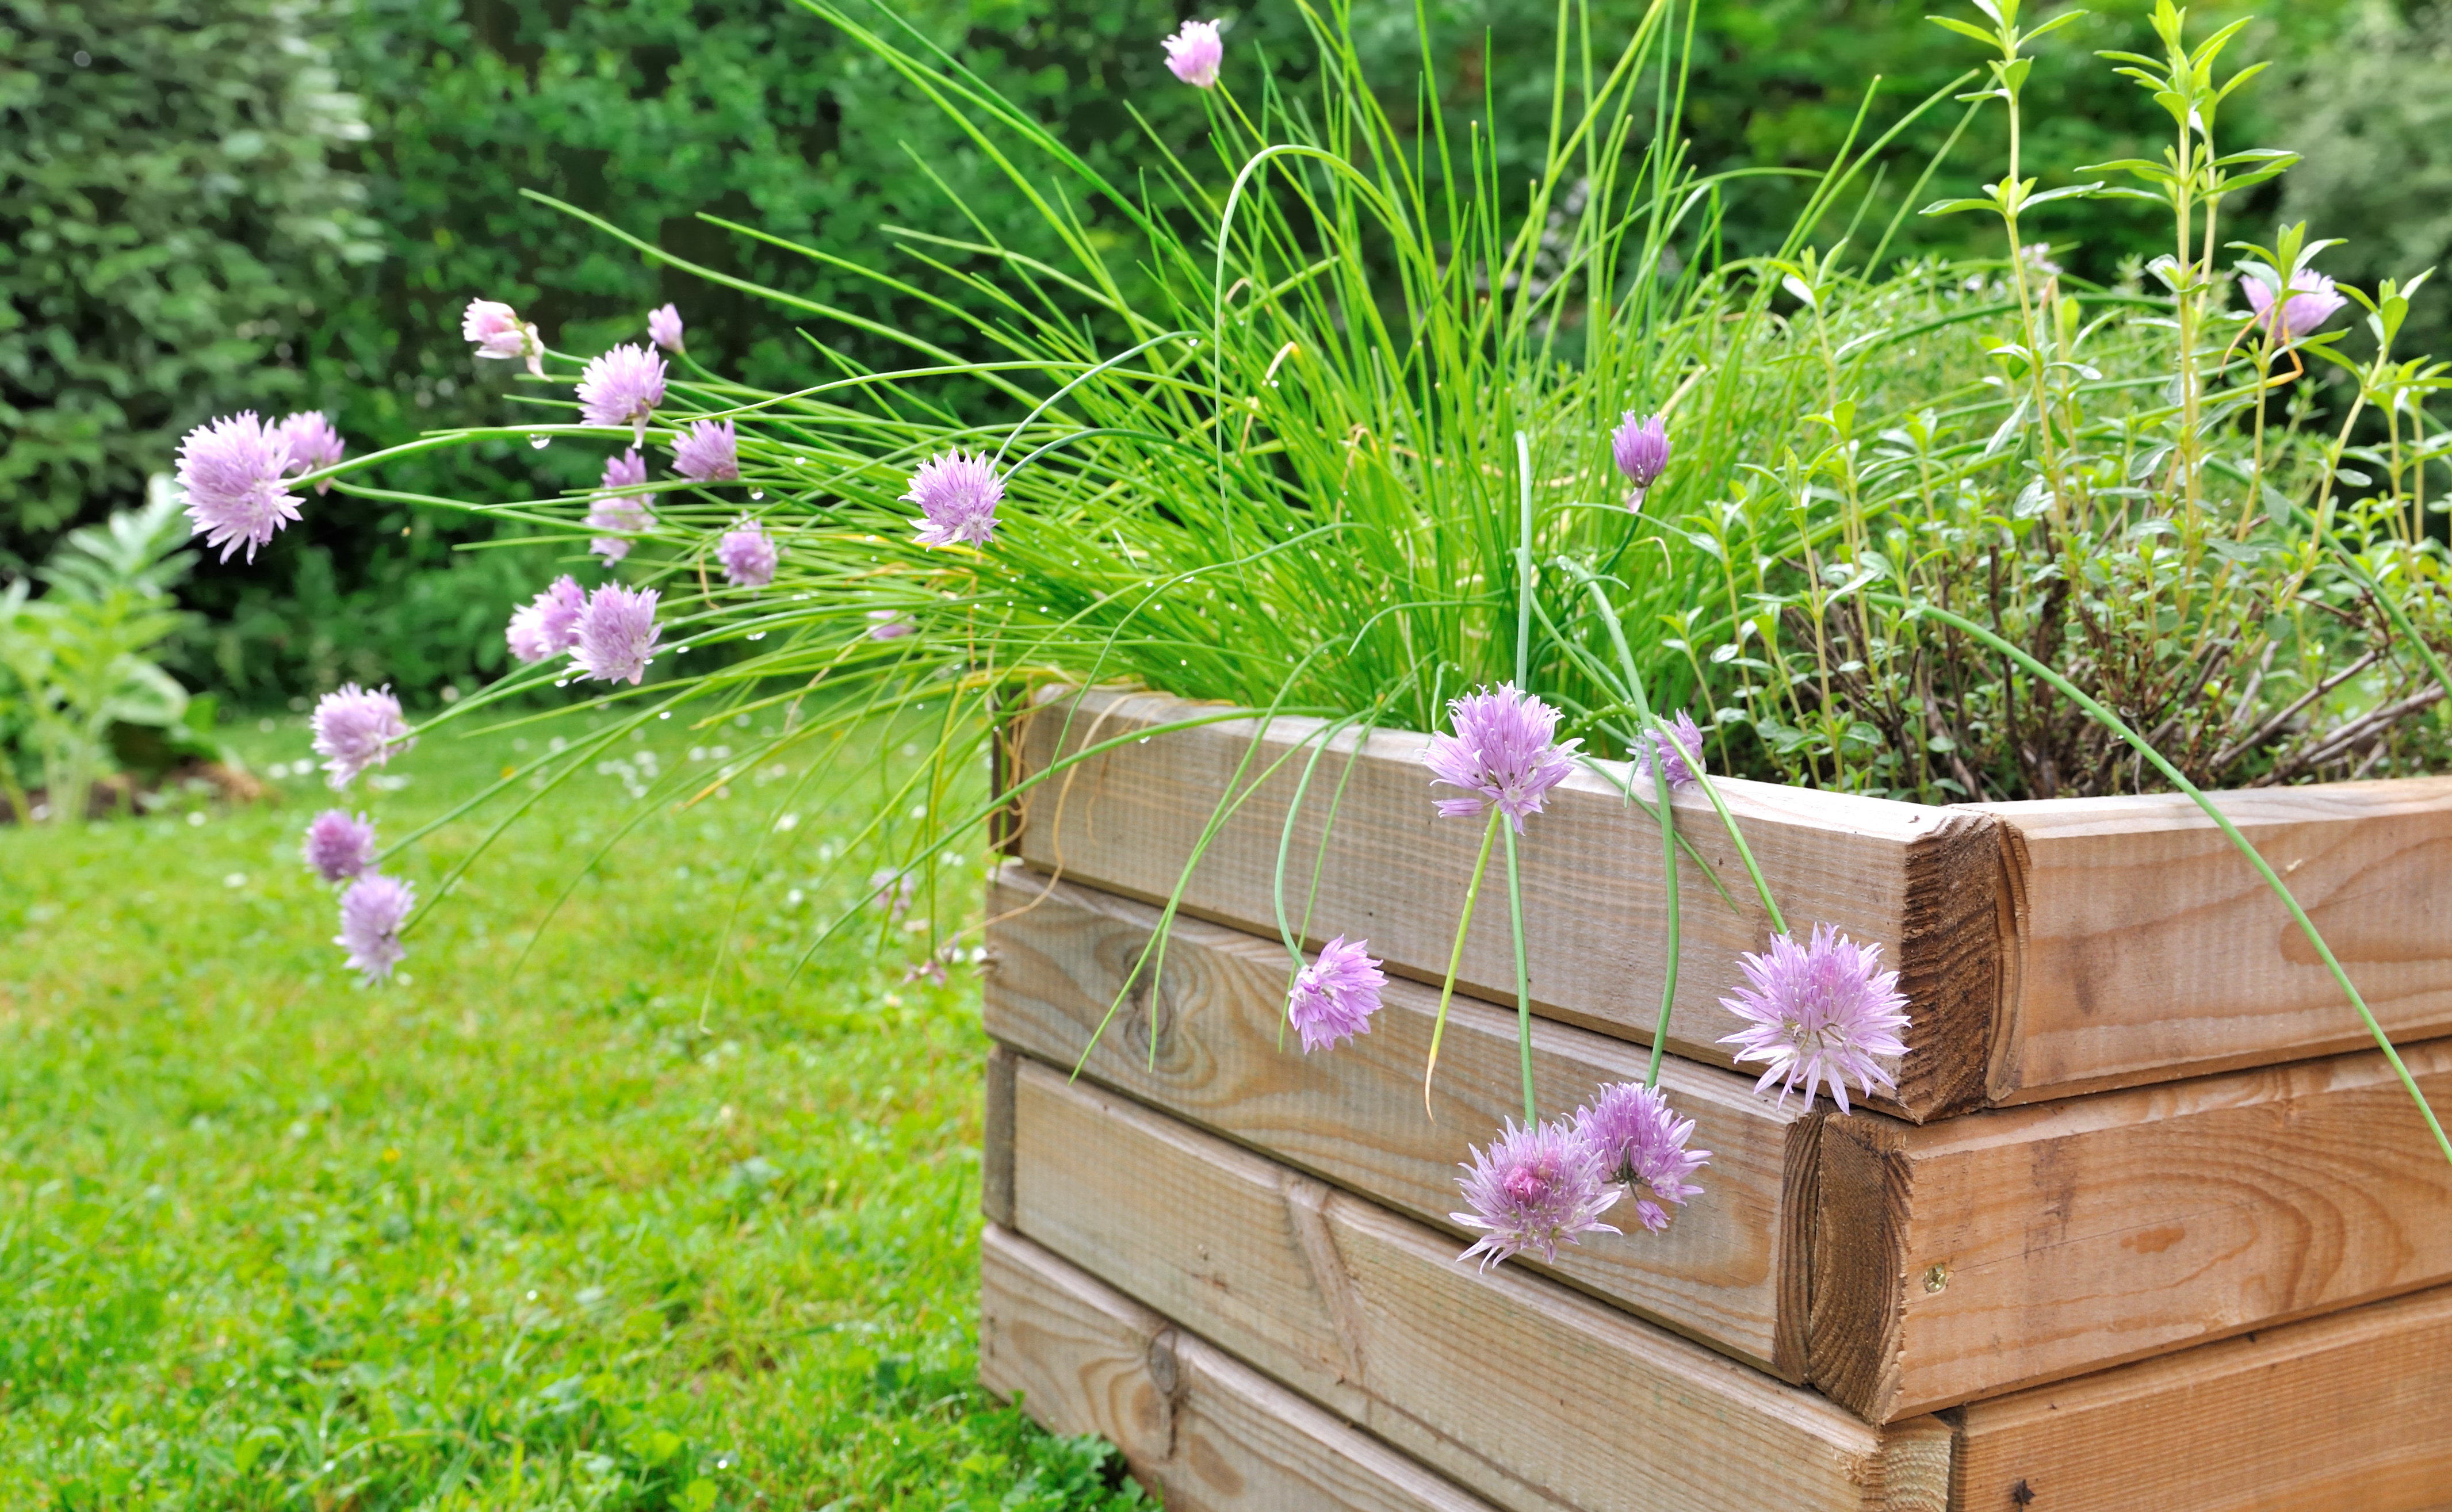 Comment fabriquer une jardinière en bois pour repiquer des plantes au printemps ? © coco, Adobe Stock